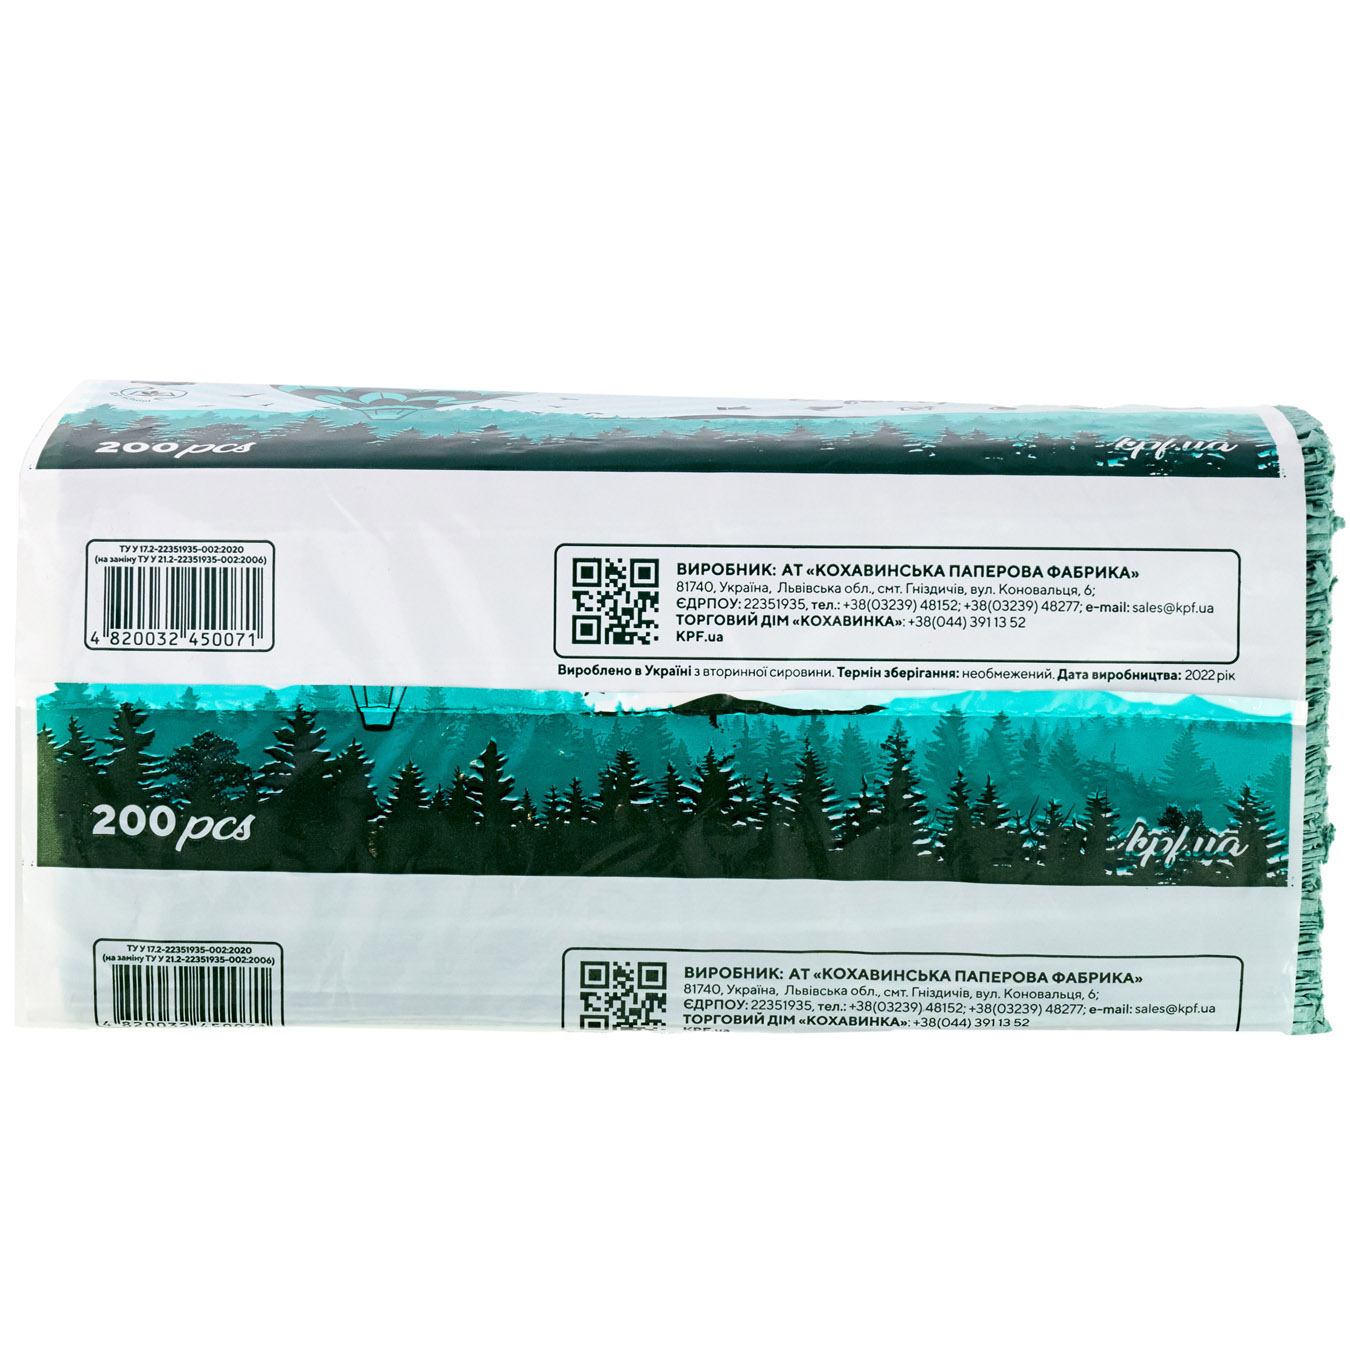 Kohavinka Paper towel type Z-Z 200 sheets color in stock
 2